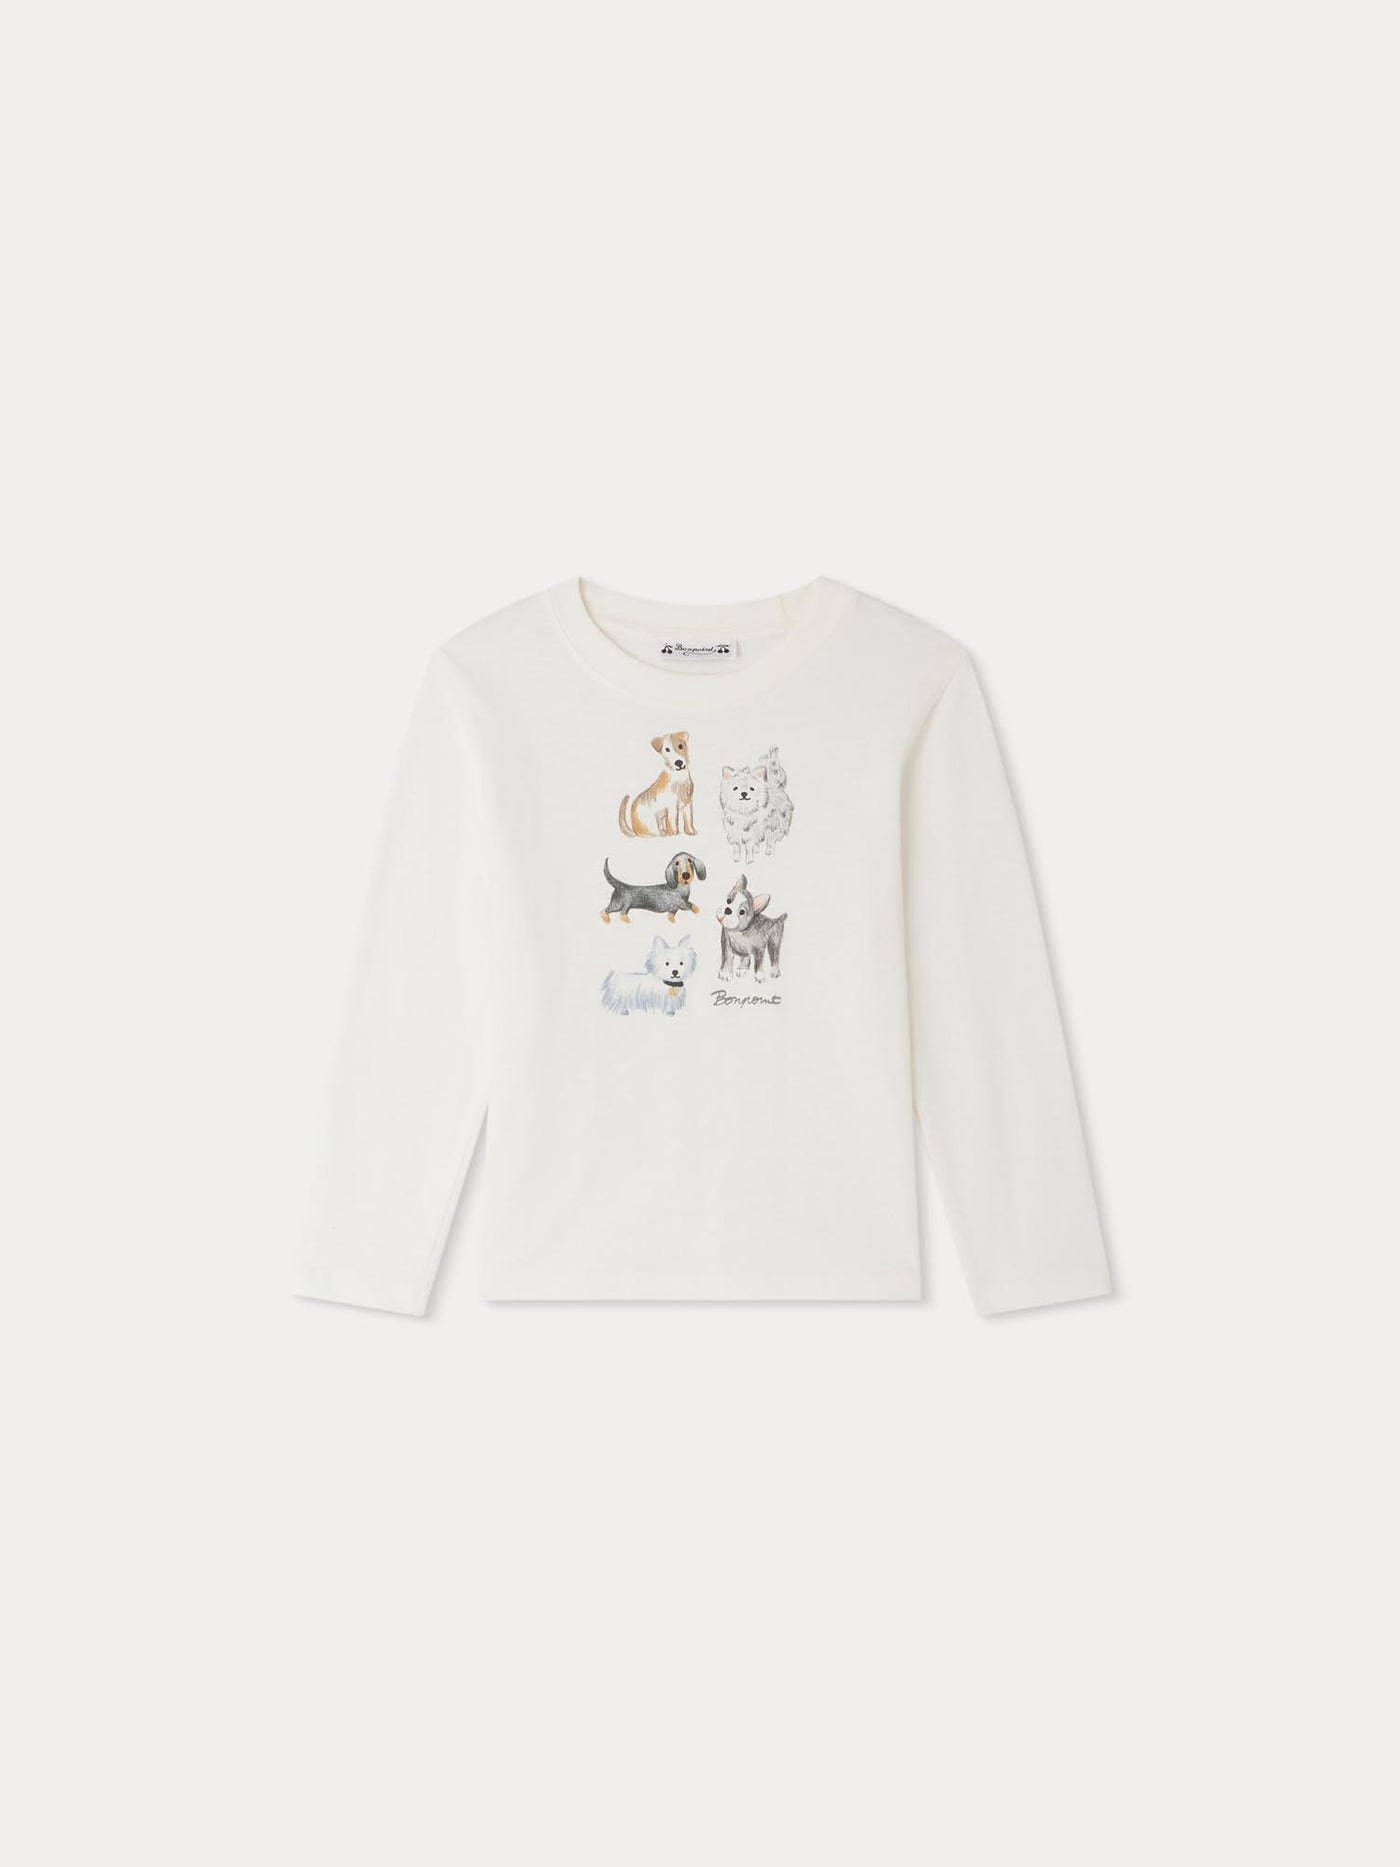 Tadda T-shirt with animal prints